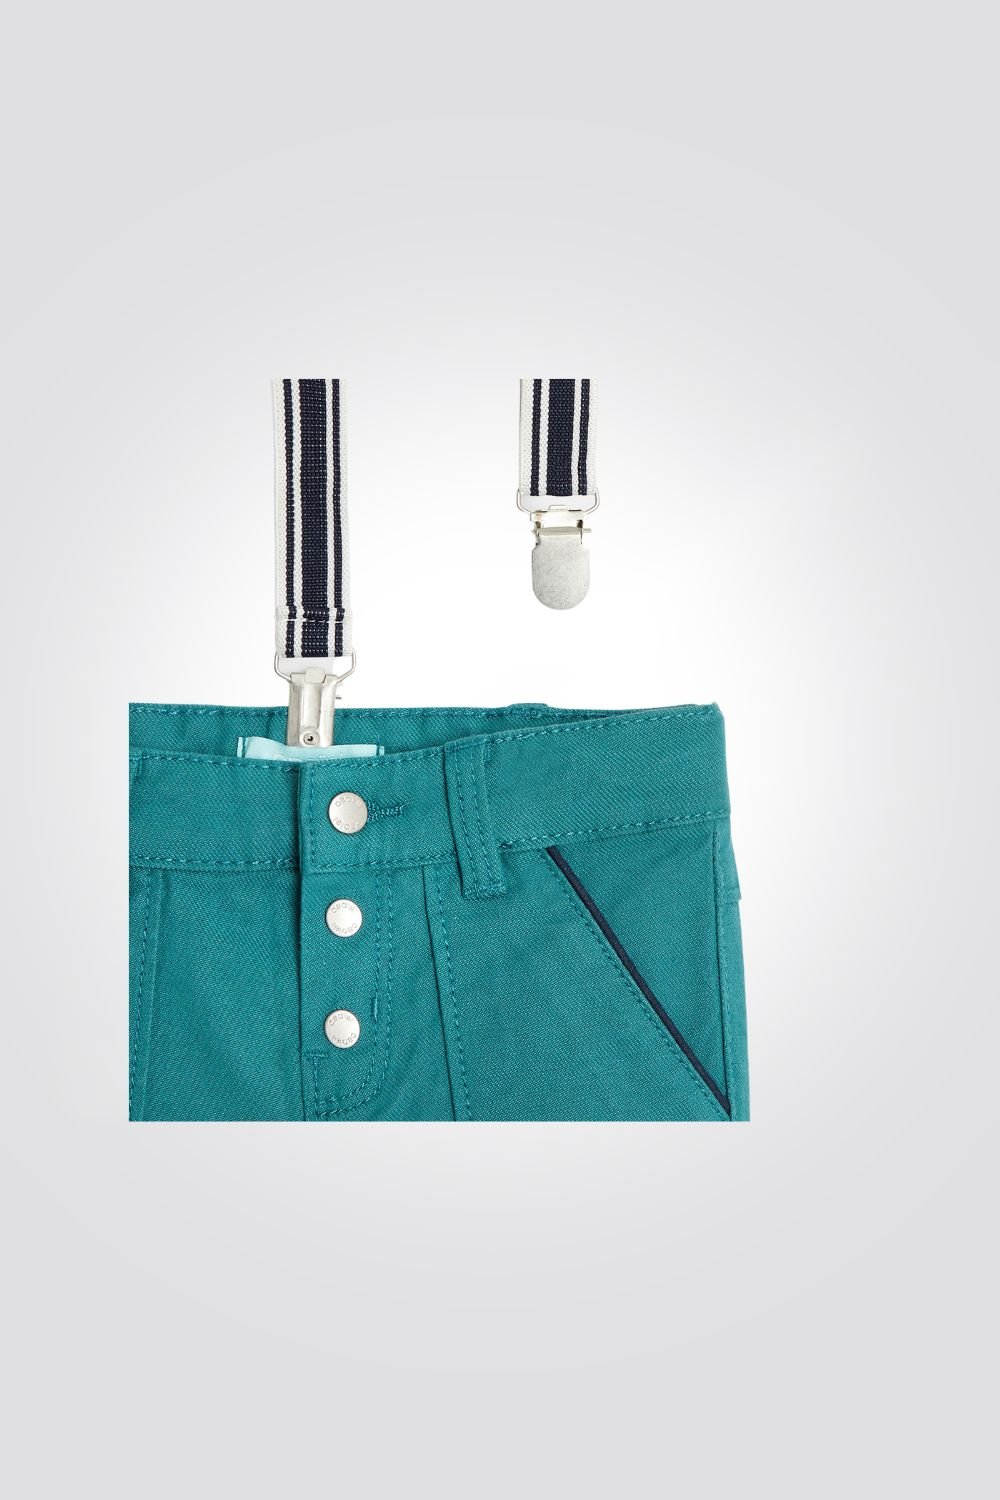 OBAIBI - מכנסי תינוקות עם שלייקס בצבע ירוק - MASHBIR//365